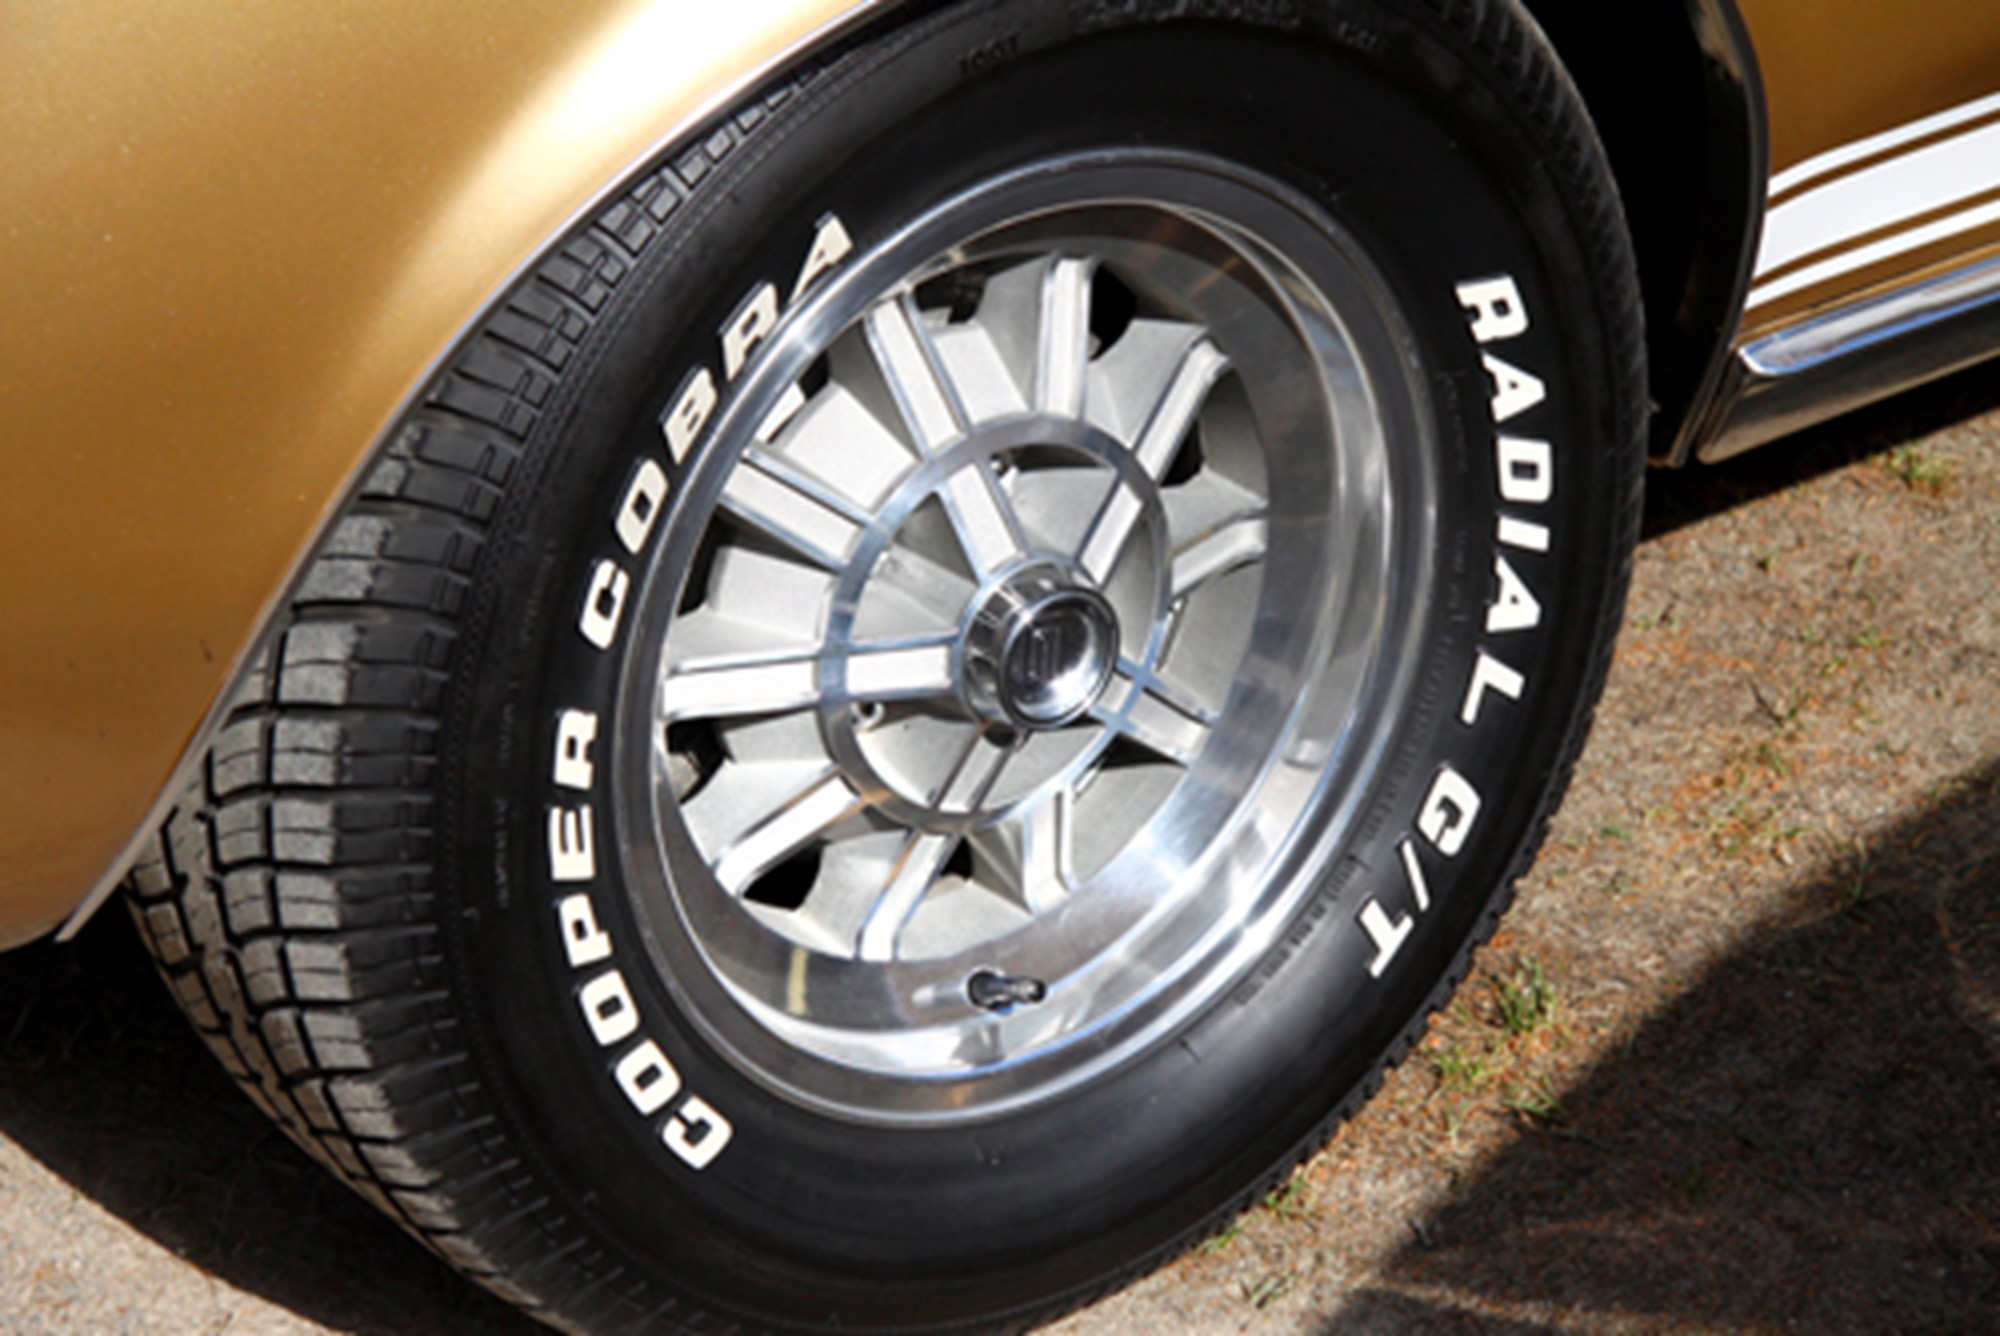 Ten Spoke ekerhjul var ett extratillbehör till 1968 års Shelby.